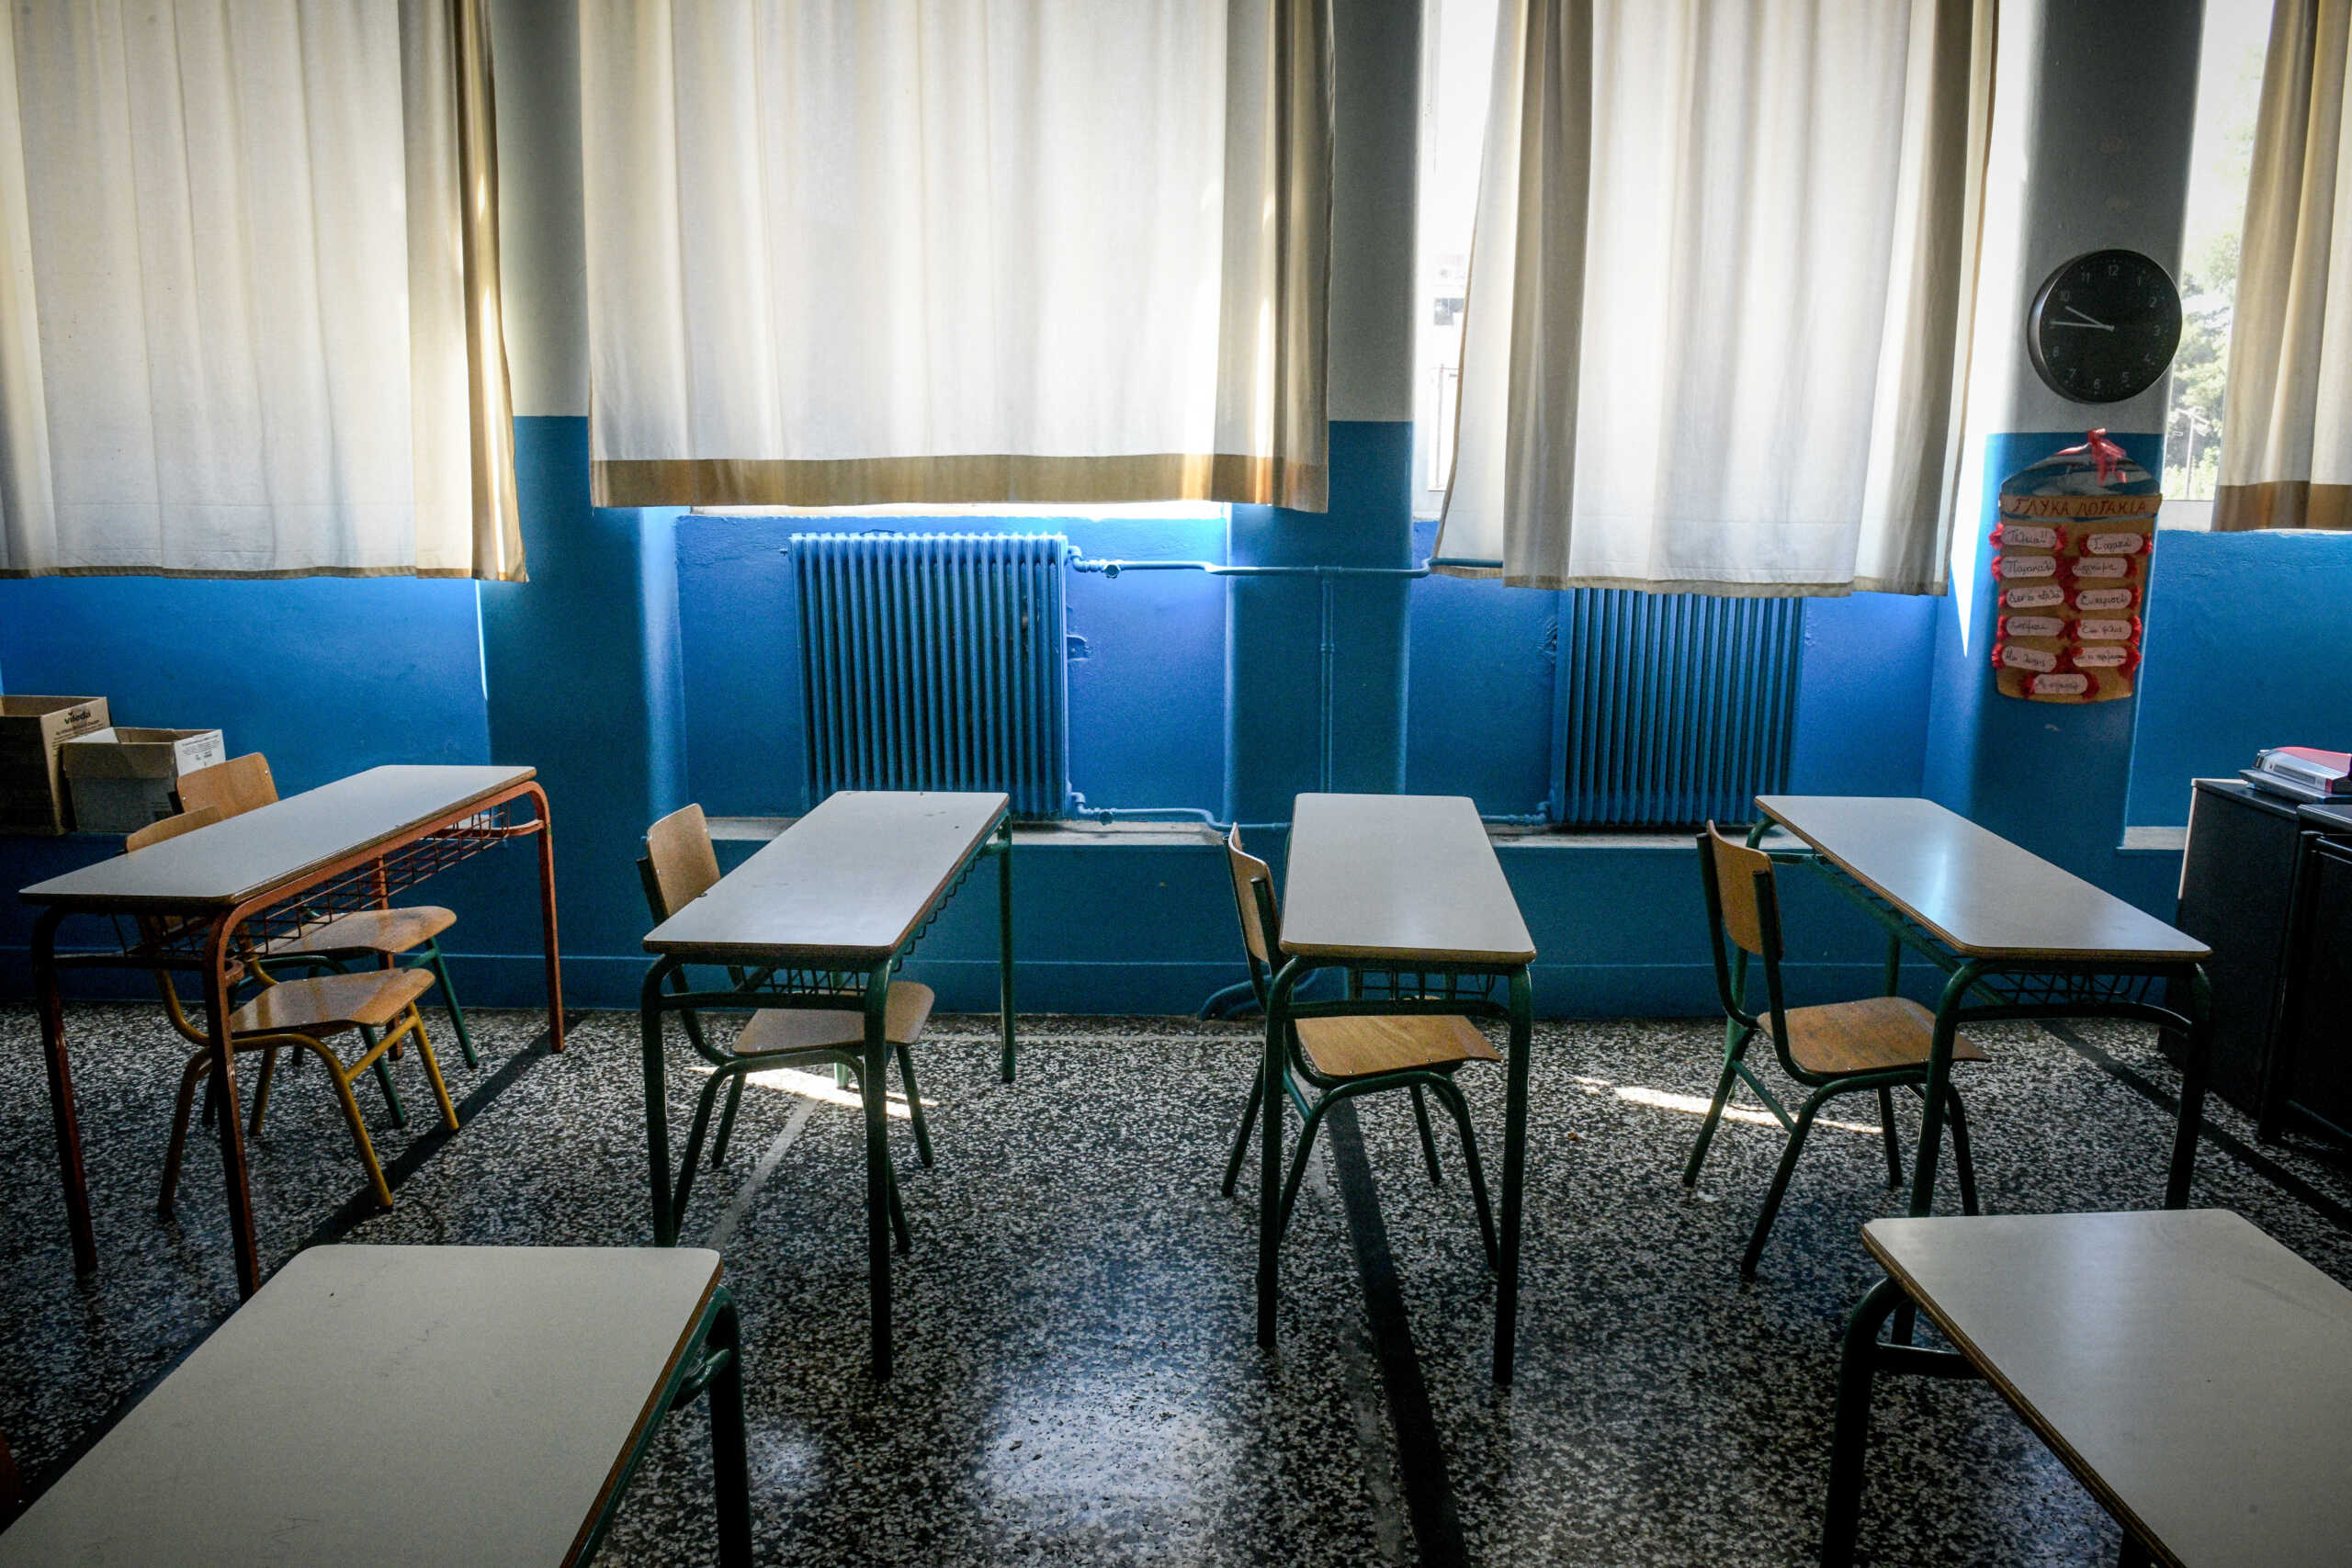 Ιωάννινα: Κρούσματα στρεπτόκοκκου σε δημοτικό σχολείο  – Κλείνει με απόφαση Δημάρχου